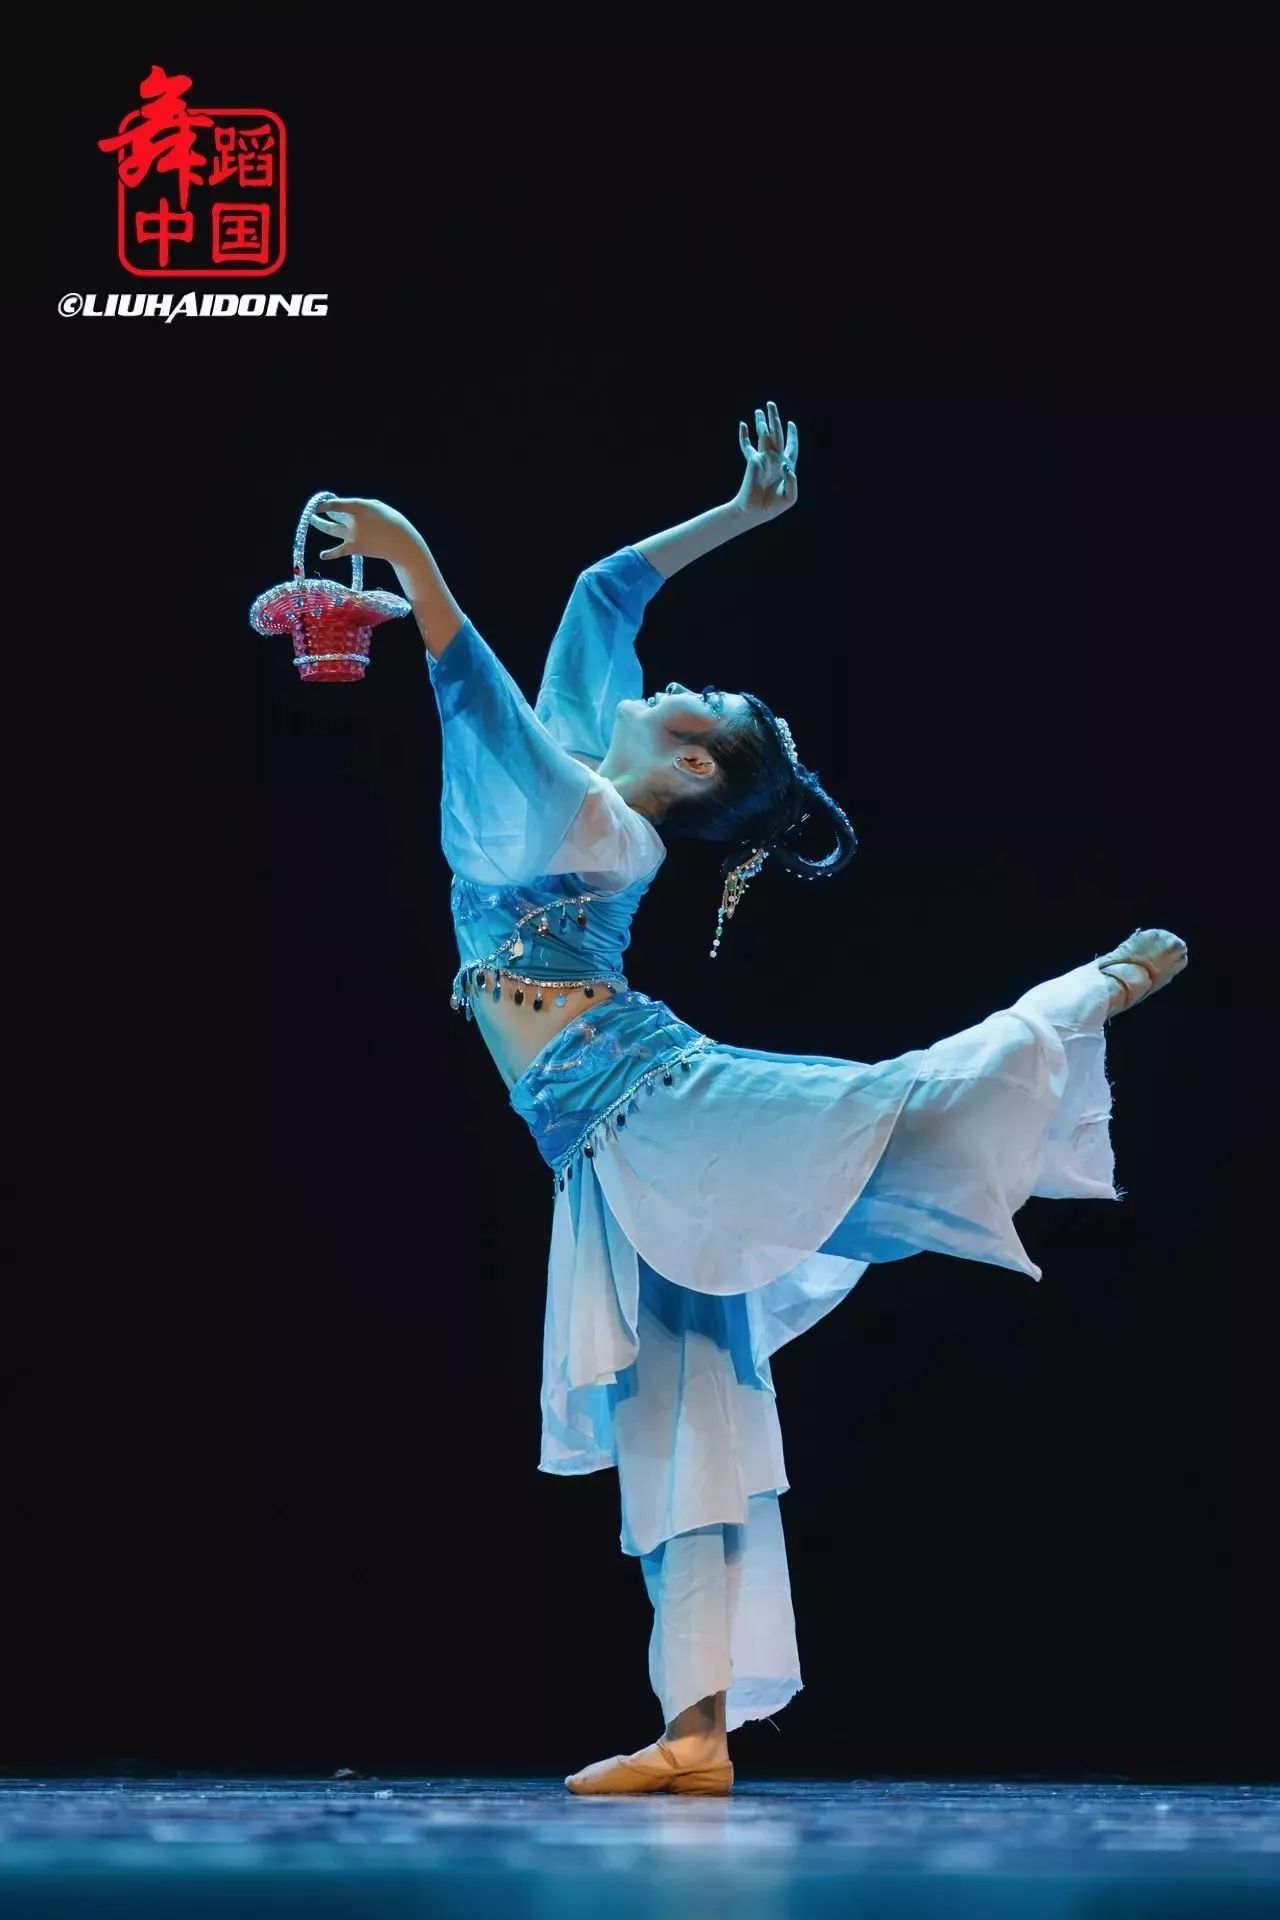 北京戏曲艺术职业学院 舞蹈系中职12级中国舞毕业汇报《不负韶华》